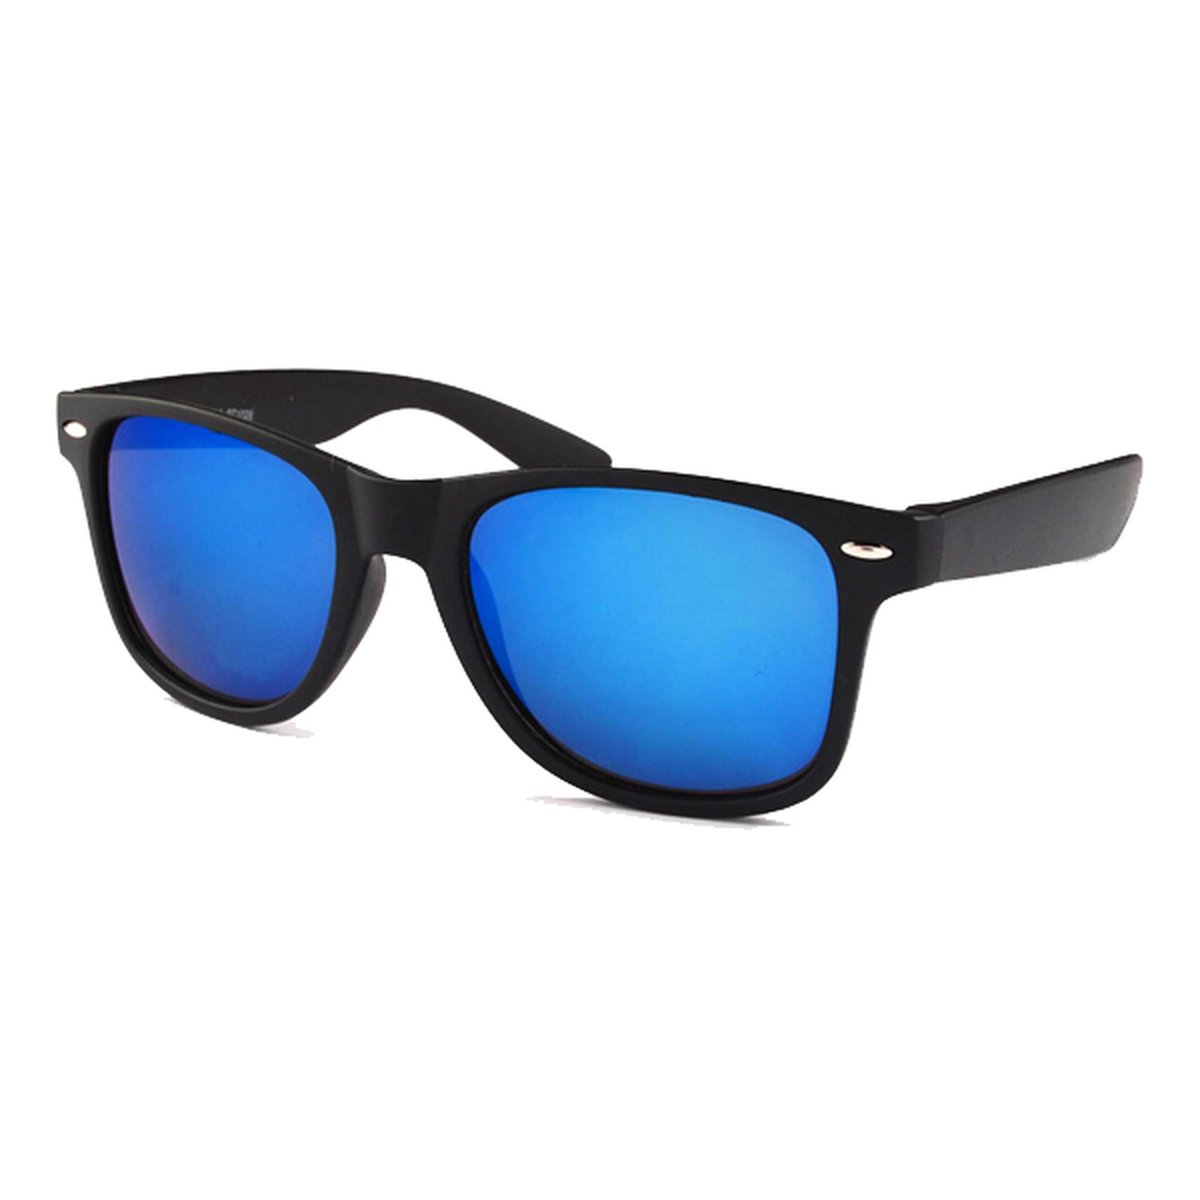 KJG - Klassieke Zonnebril - Mat Zwart Montuur - Blauw Spiegel